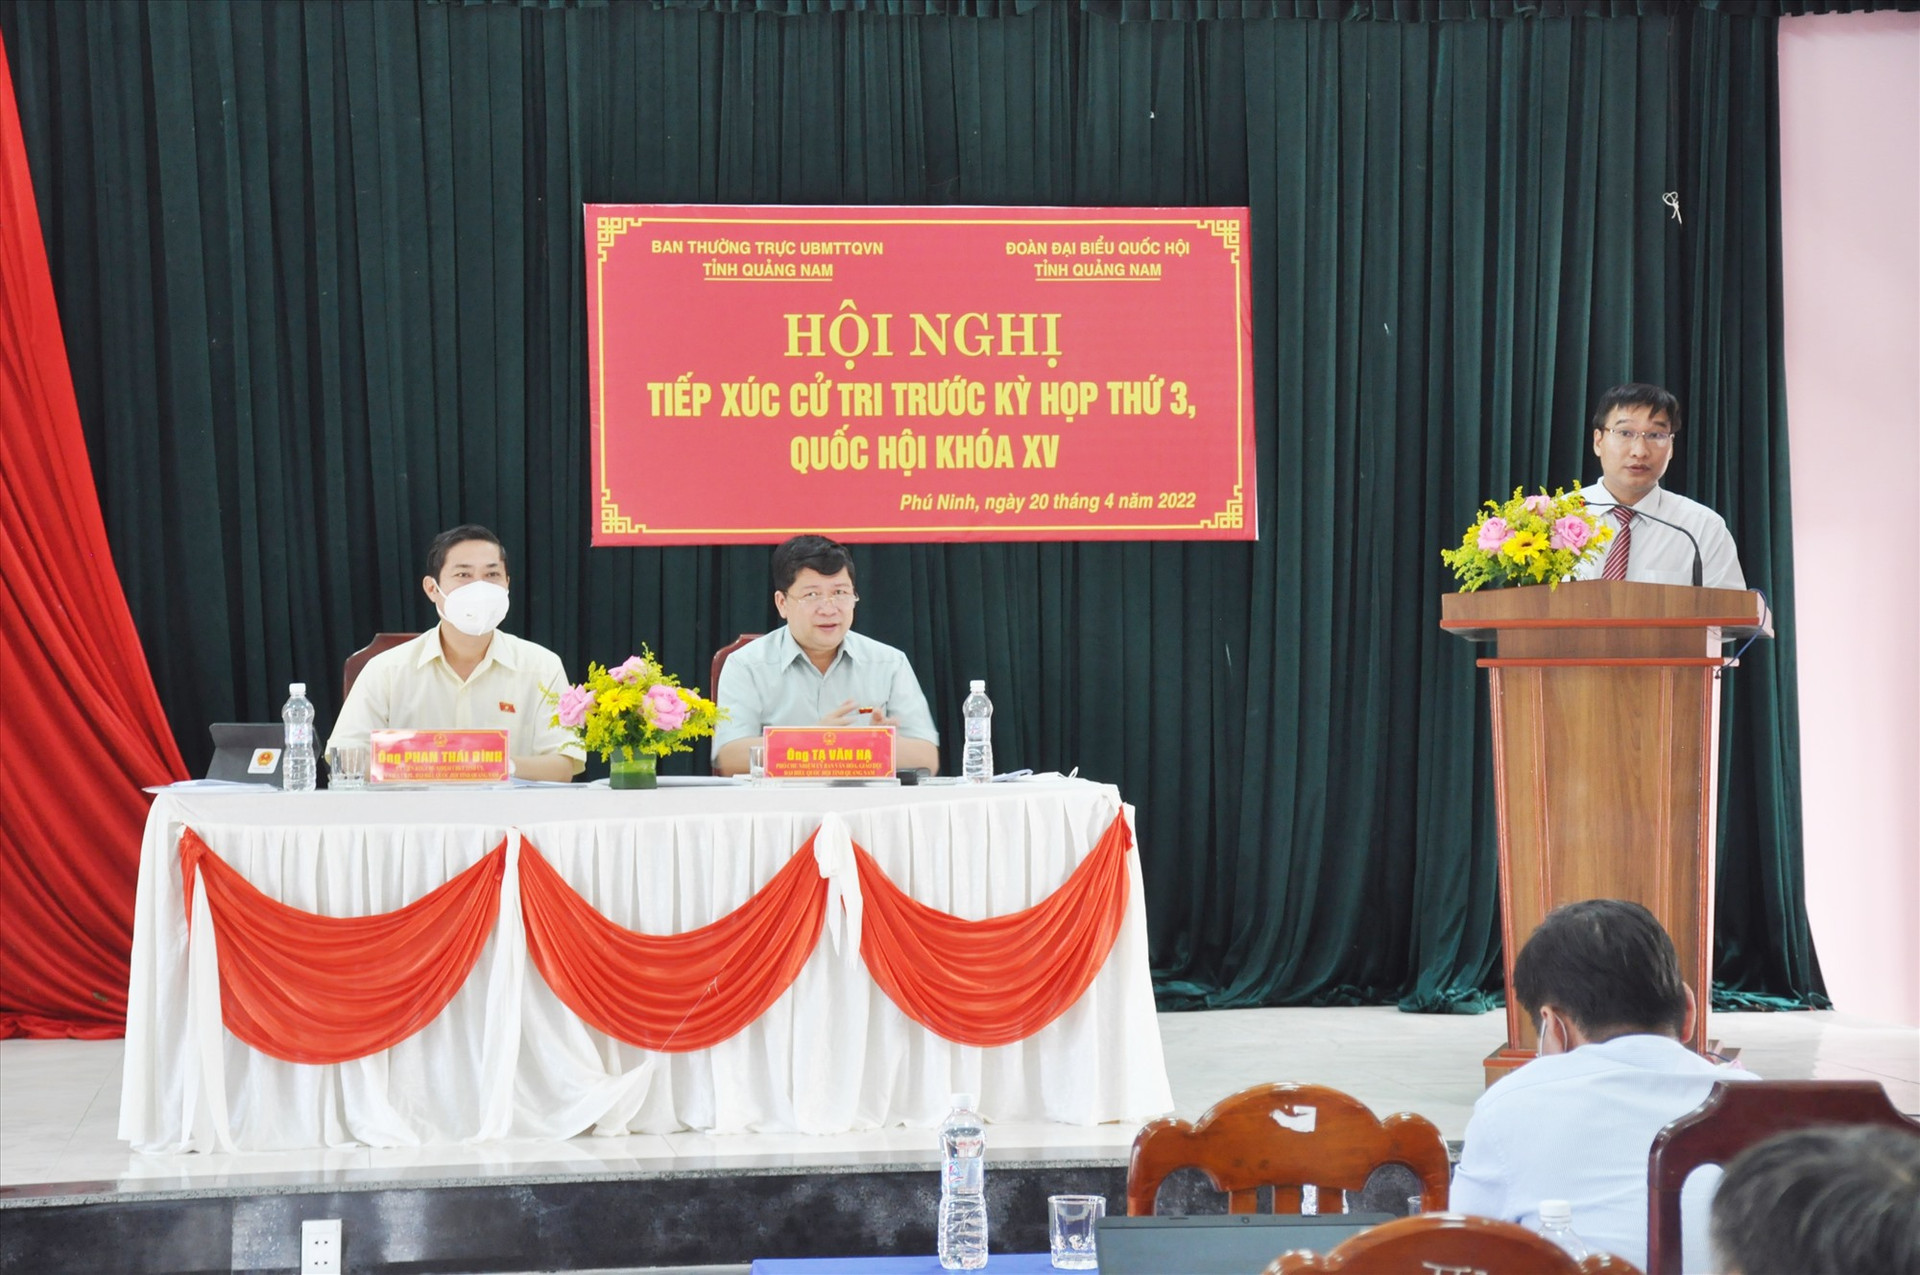 Các đại biểu Quốc hội Phan Thái Bình và Tạ Văn Hạ tiếp xúc cử tri huyện Phú Ninh chiều ngày 20.4. Ảnh: N.Đ